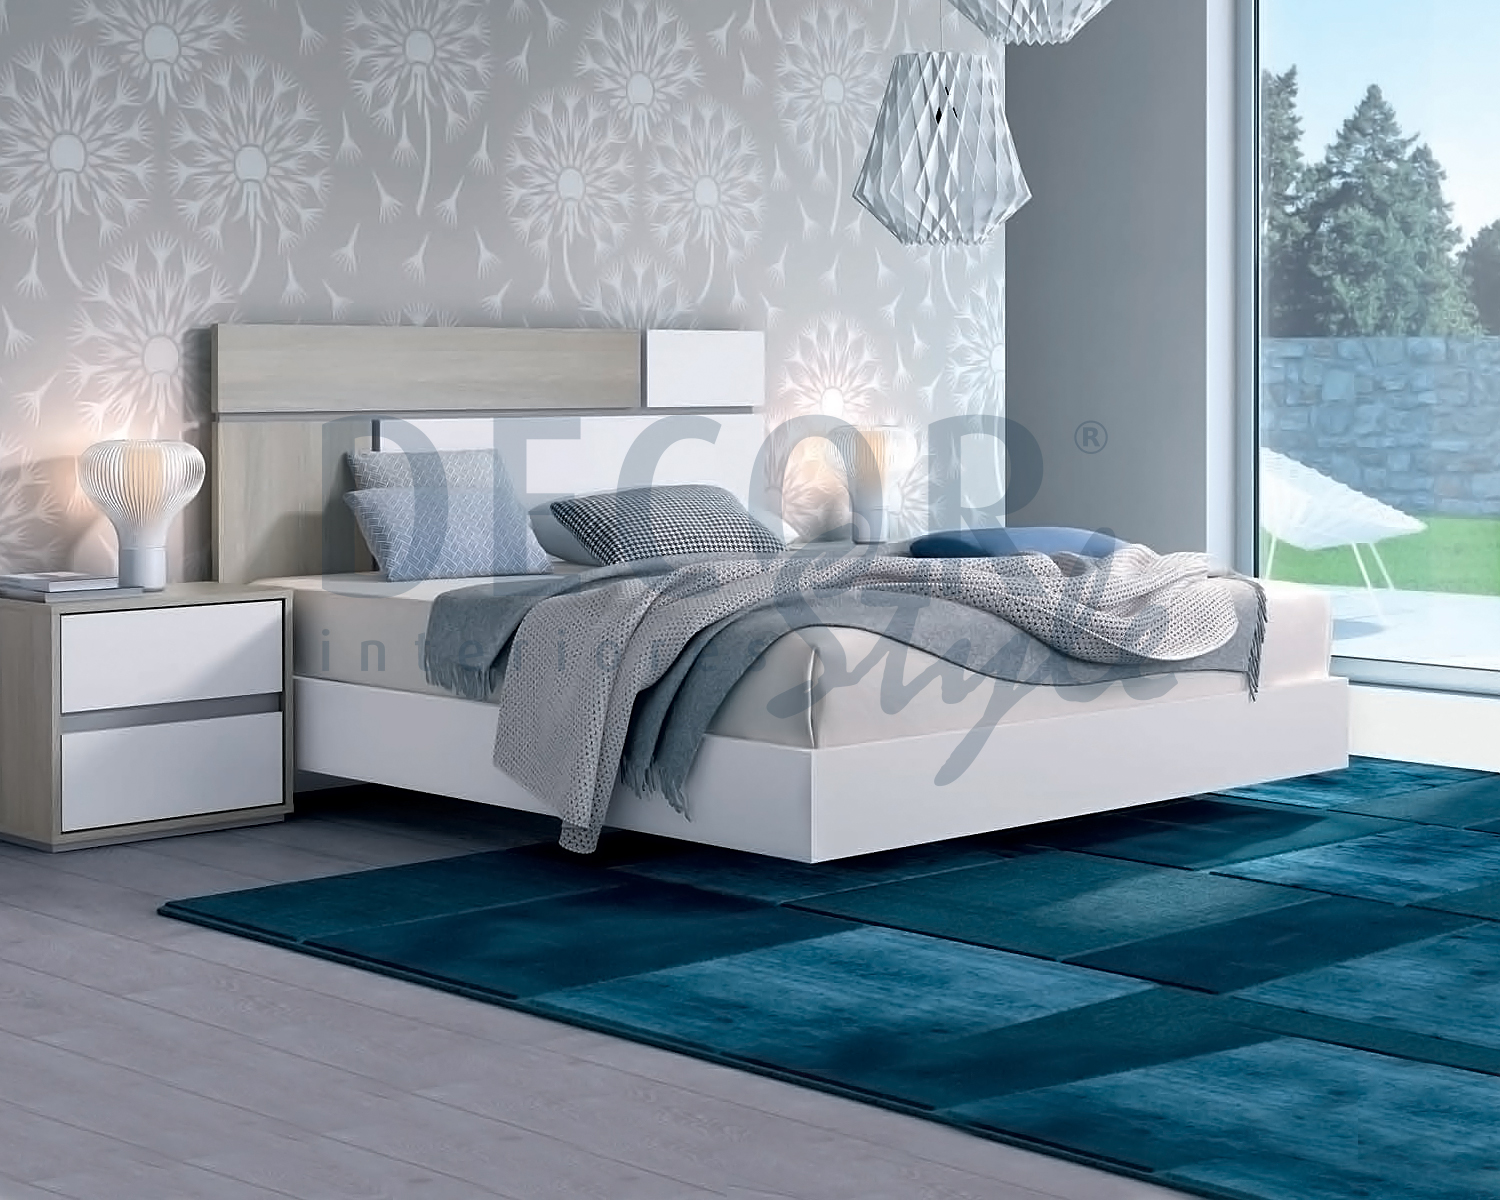 cama de casal nothing hill londres elegante e moderna de linhas simples e minimalistas em branco e madeira natural ou cinza